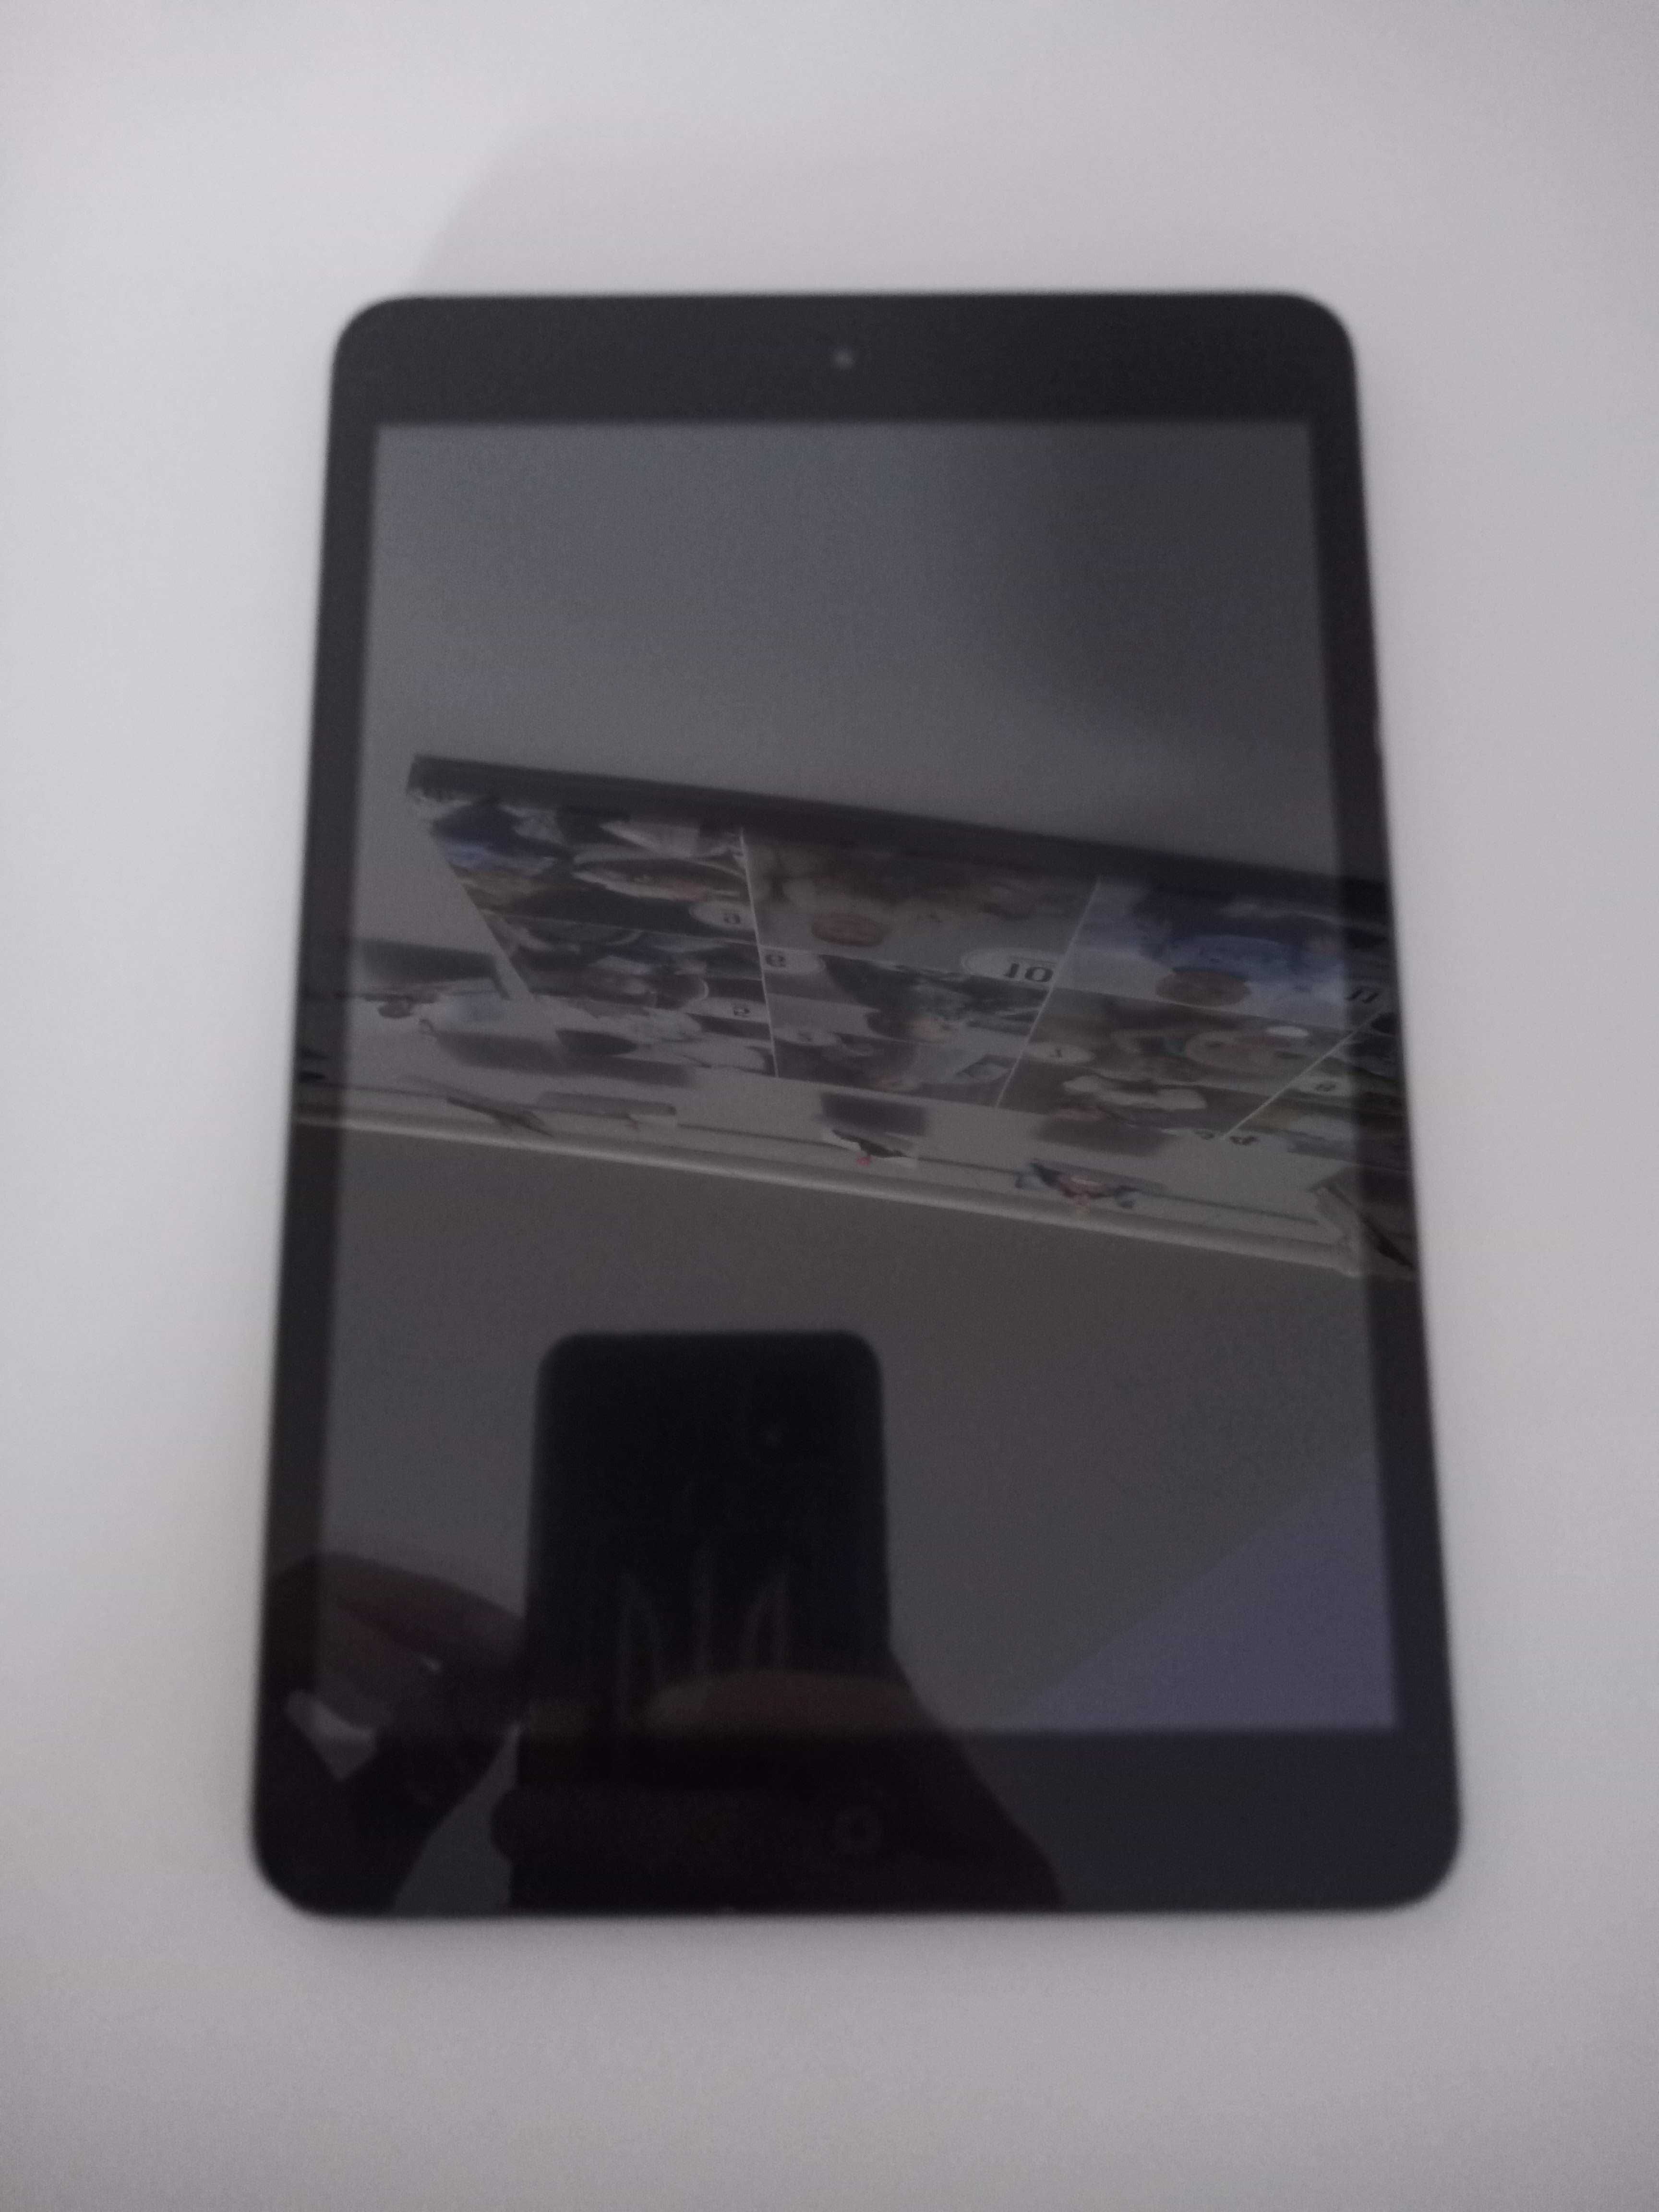 Apple iPad mini 32GB (A1432)